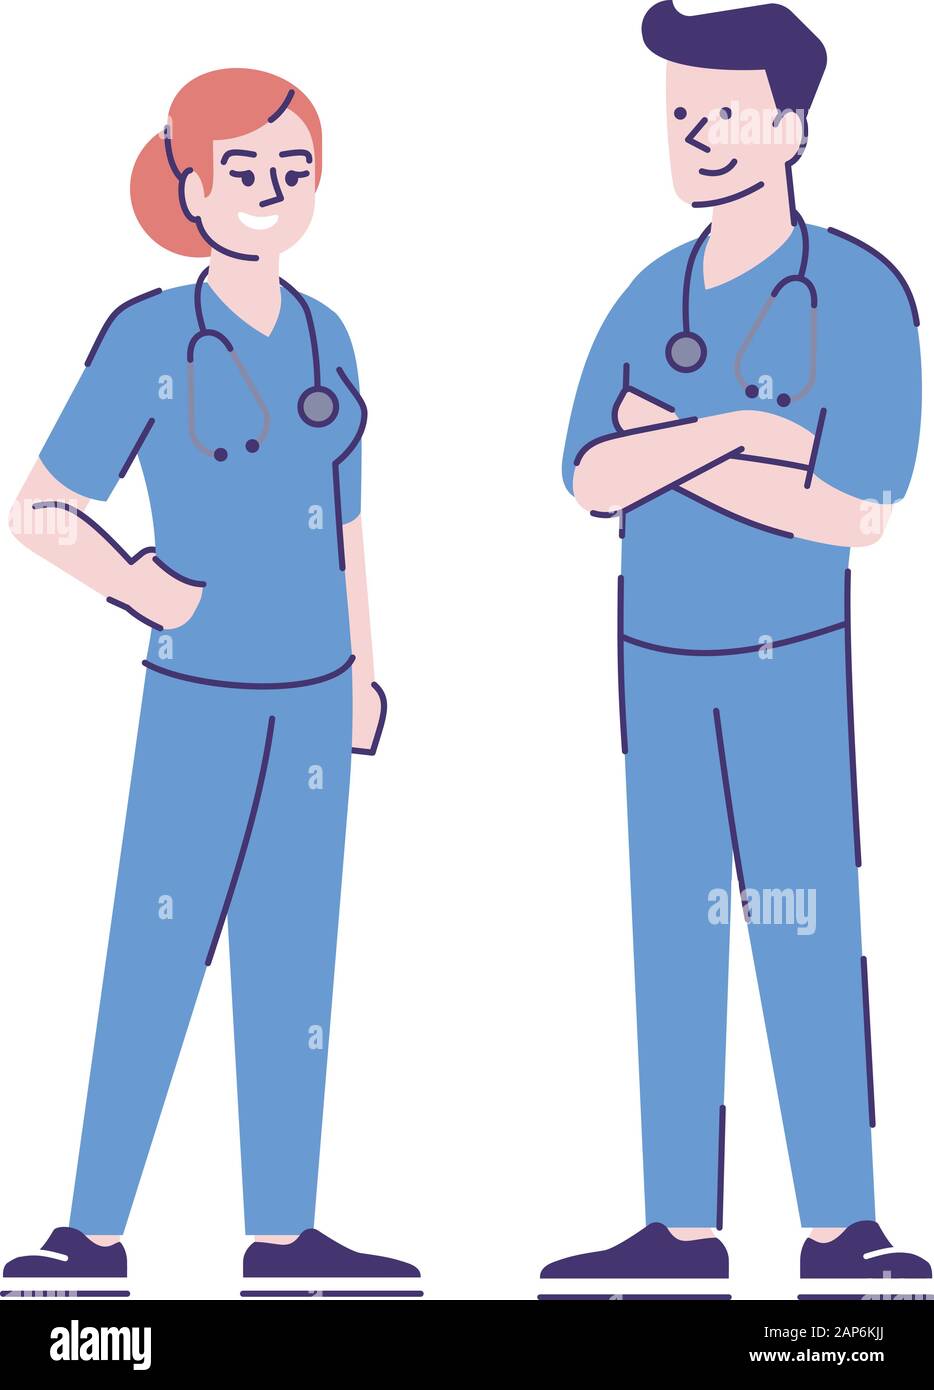 Männliche und weibliche Krankenschwestern flachbild Vektor Zeichen. Medizinische Betreuer Cartoon Illustration mit skizzieren. Professionelle Pflegekräfte. Ärzte, Therapeuten, Heilpraktiker, gen Stock Vektor